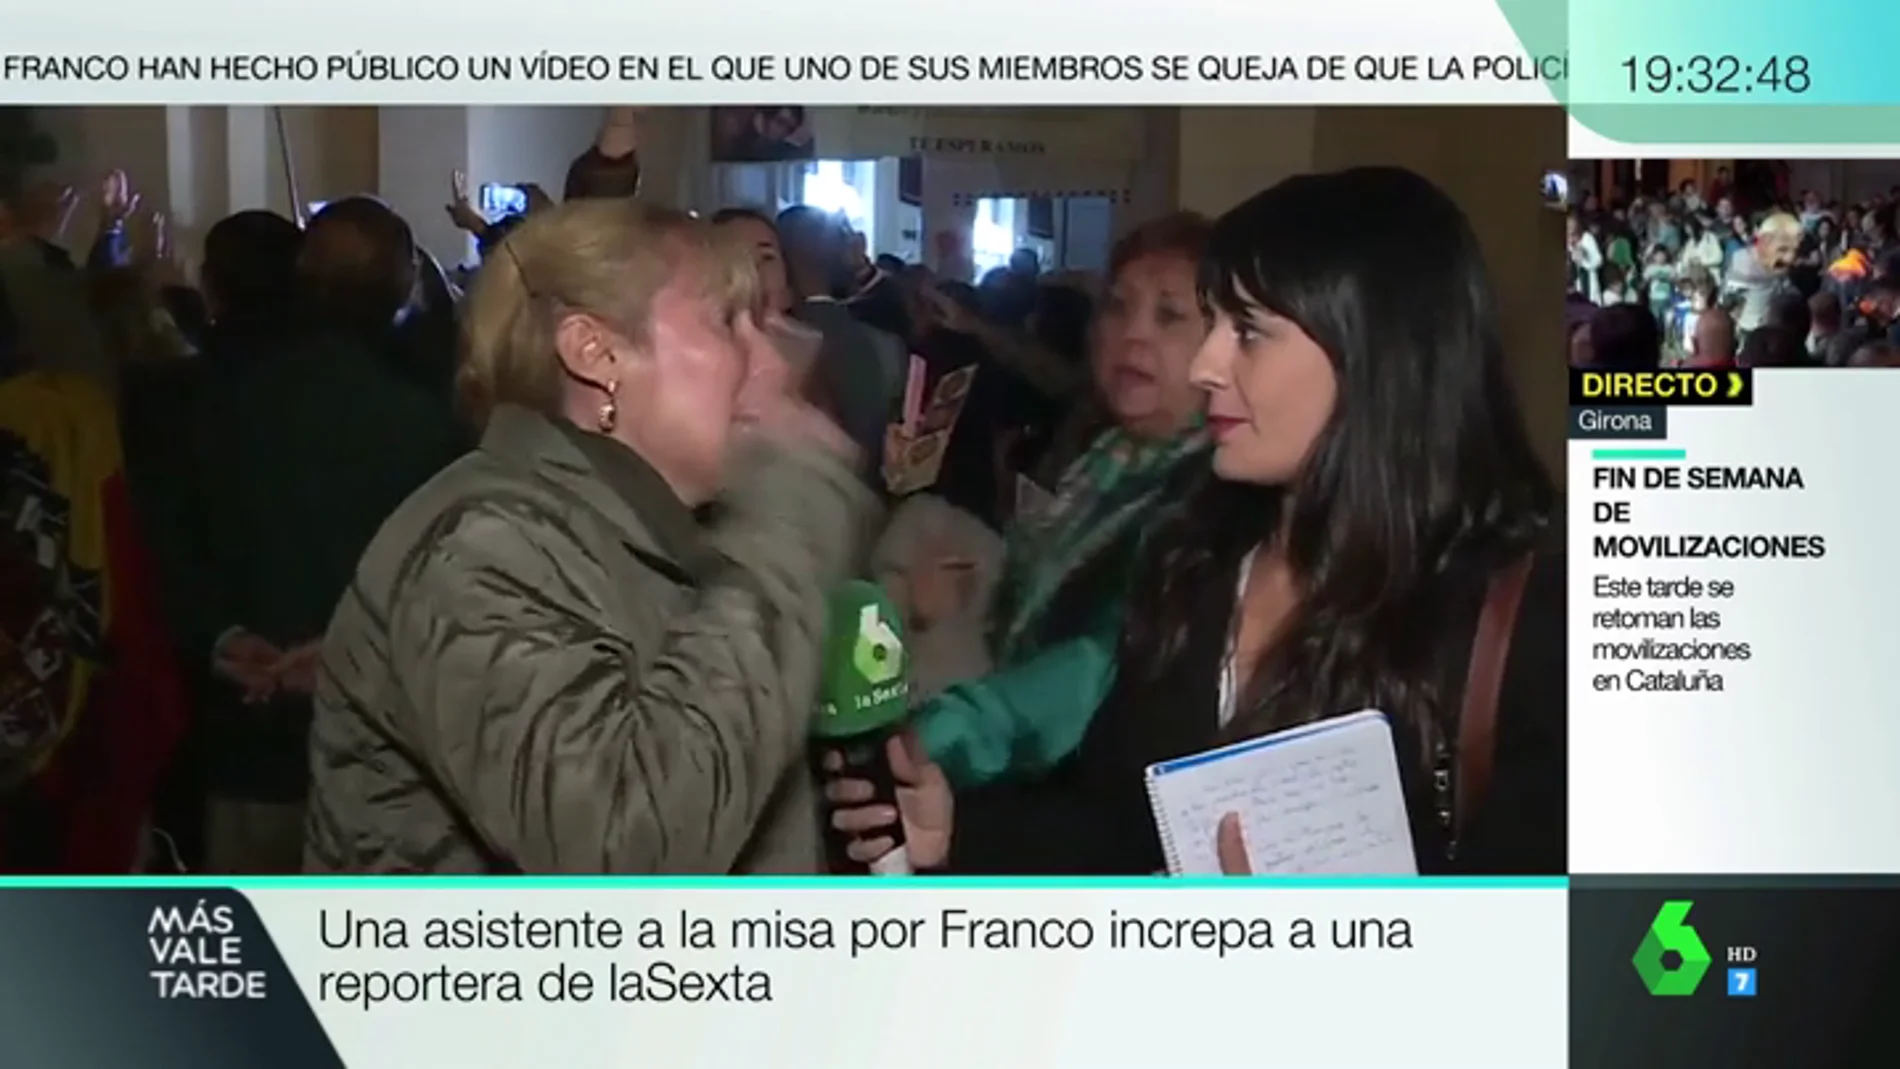 Una asistente a la misa por Franco increpa en pleno directo a una reportera de laSexta: "No tenéis vergüenza"